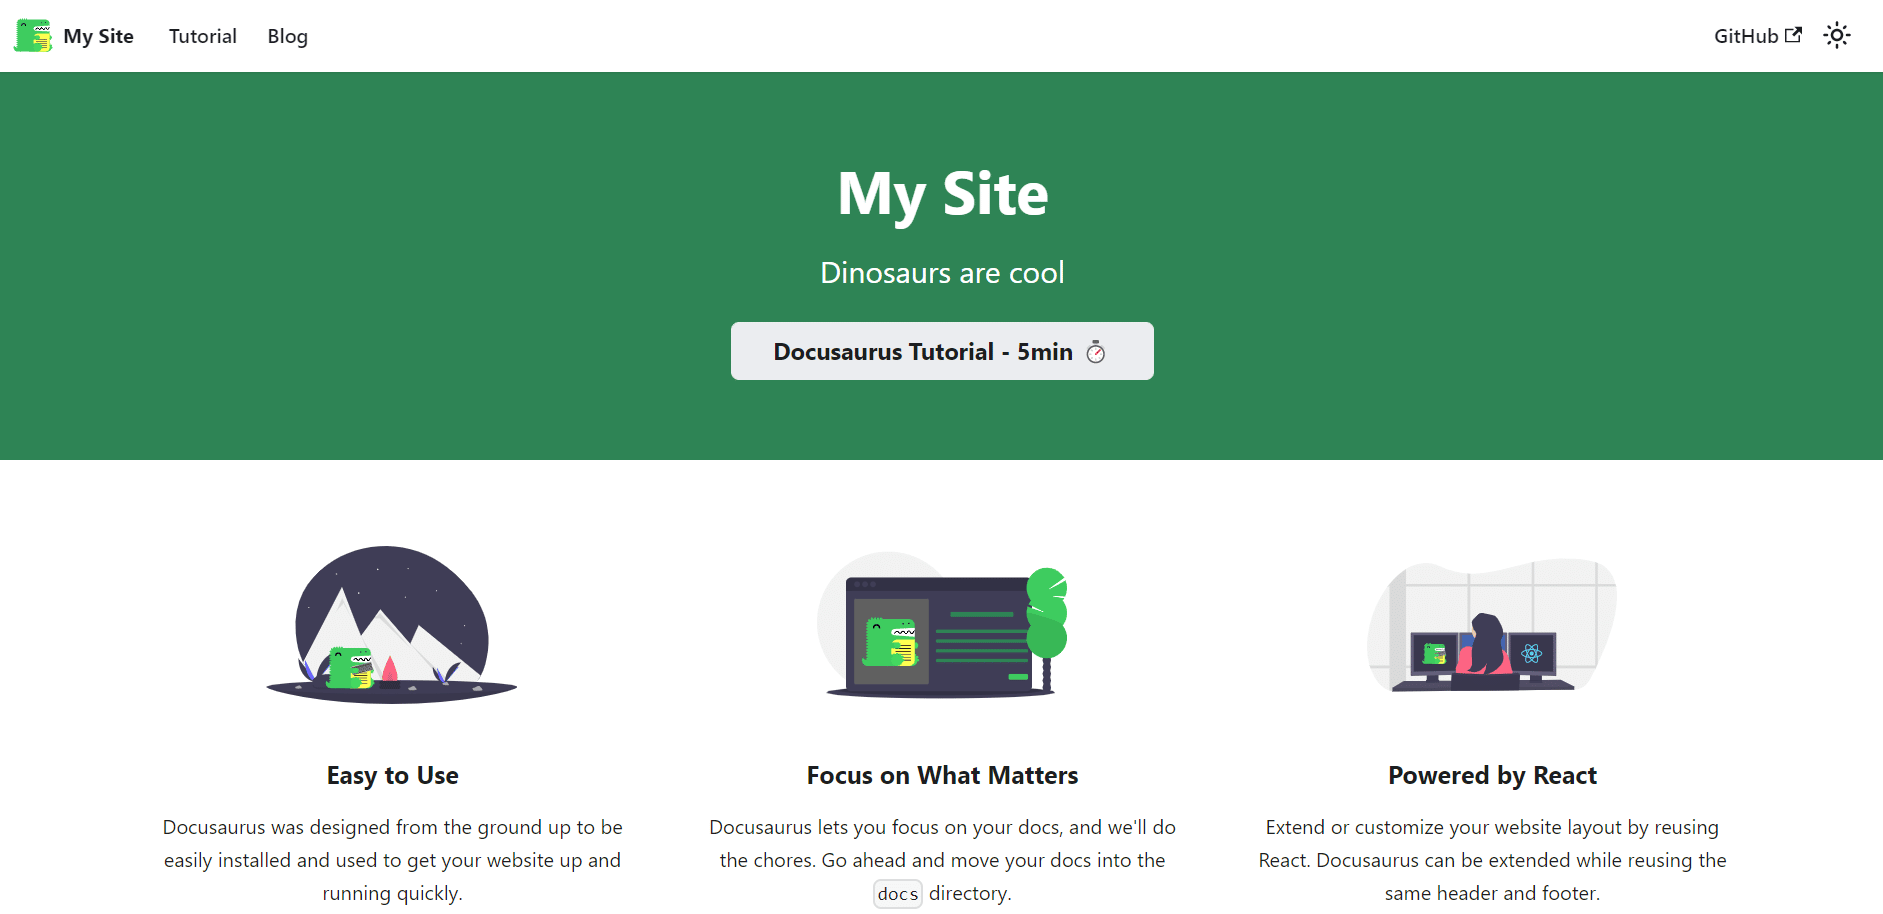 Pagina predefinita My Site di Docusaurus dopo l'installazione.